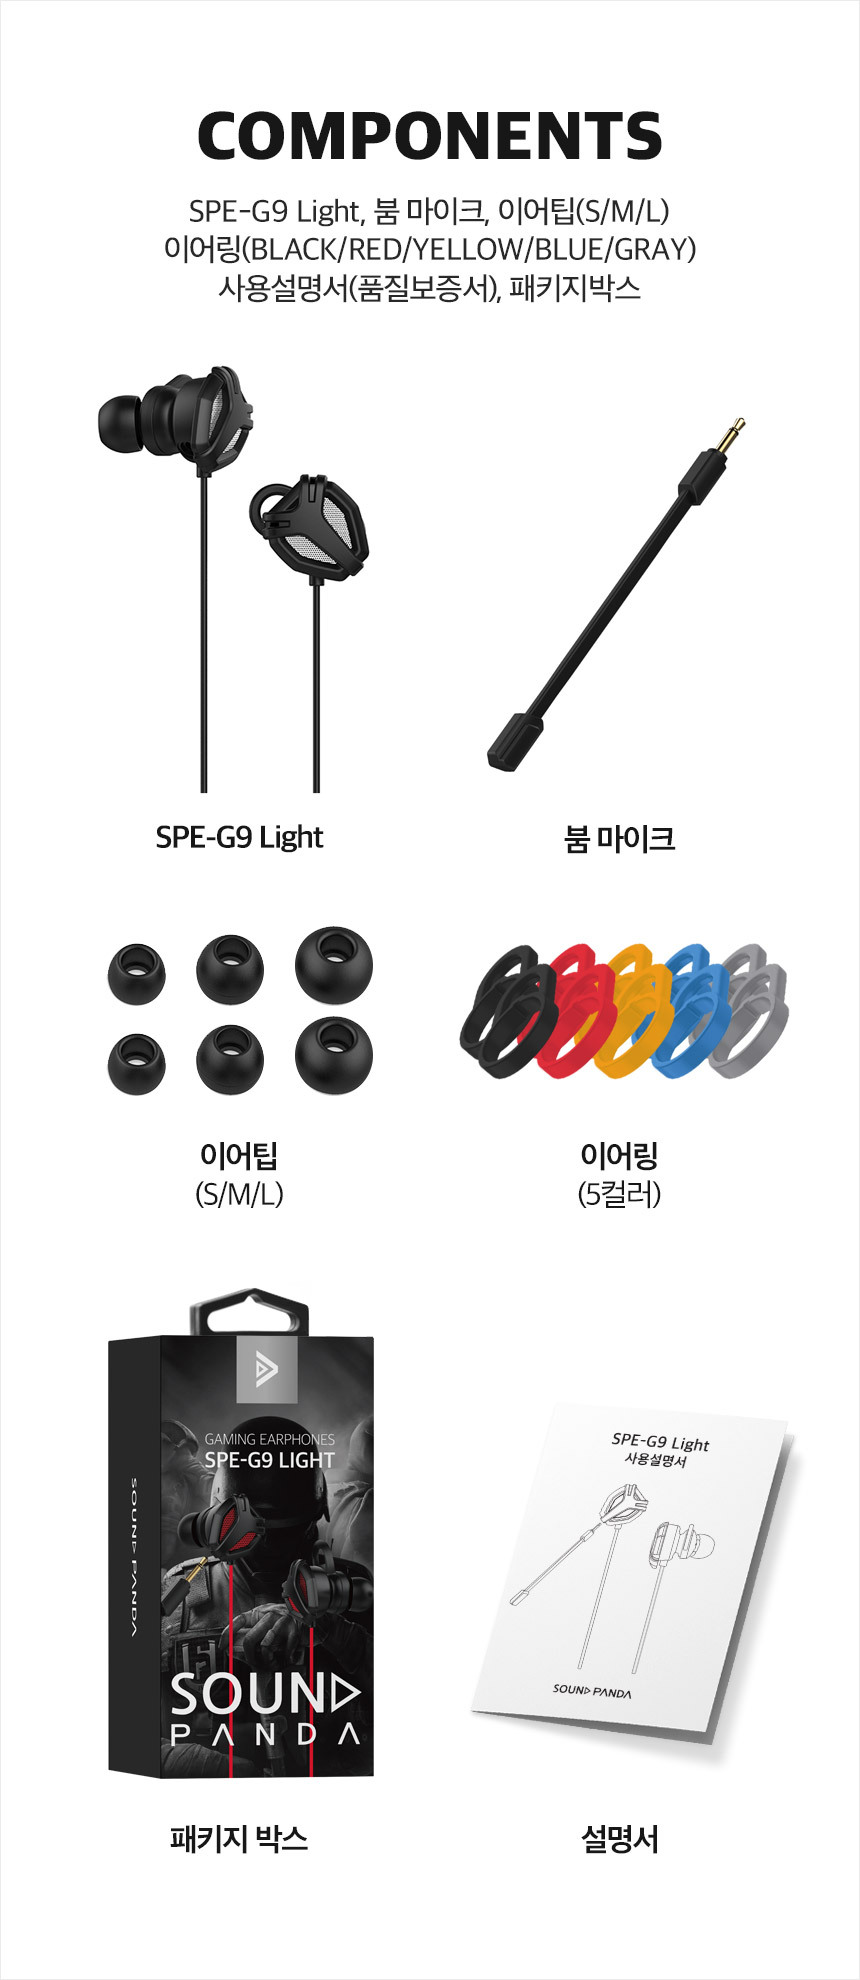 구성품: SPE-G9 Light, 붐마이크, 이어팁(S/M/L), 이어링(black/red/yellow/blue/gray), 사용설명서, 패키지박스